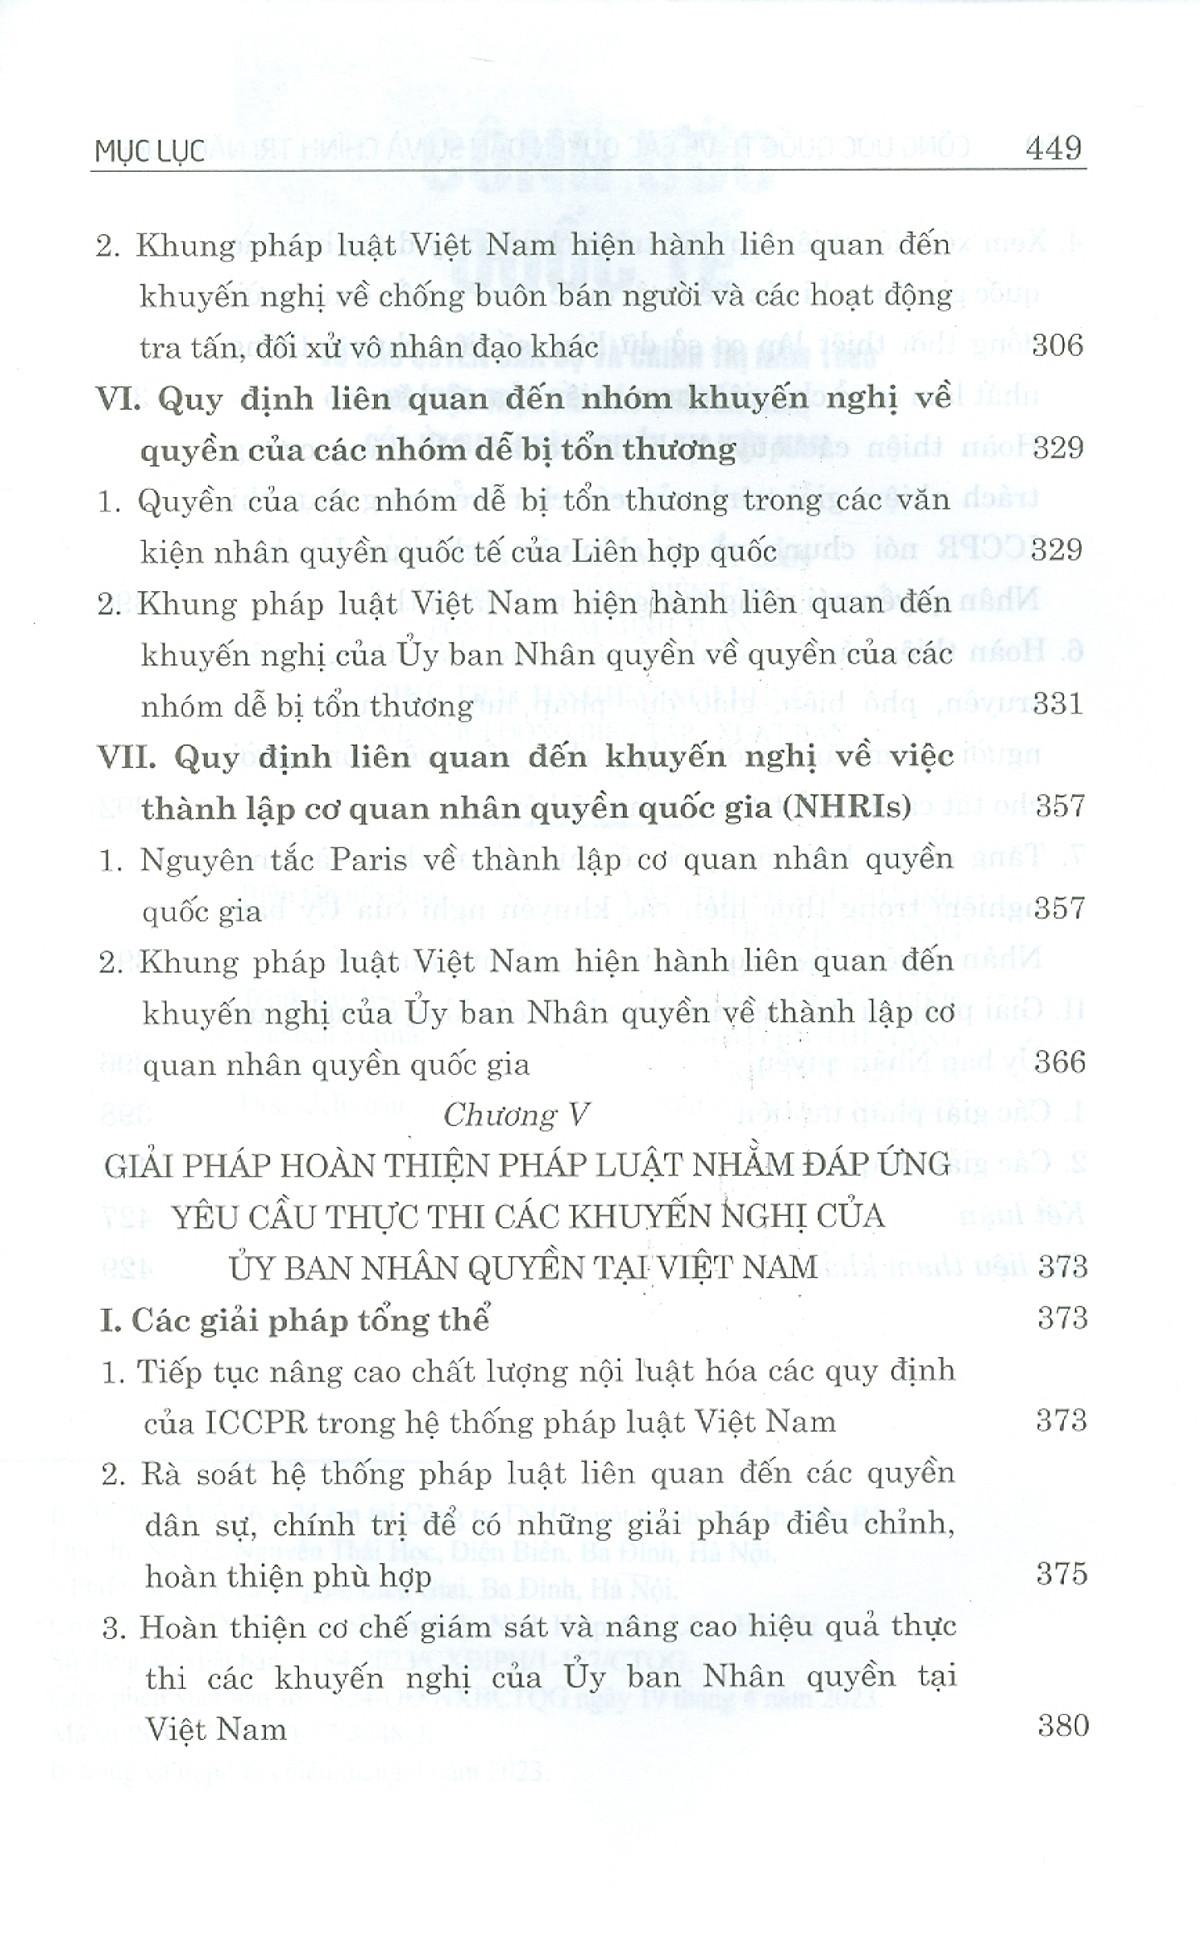 Công Ước Quốc Tế Về Các Quyền Dân Sự Và Chính Trị Năm 1966 Và Việc Thực Thi Các Khuyến Nghị Của Ủy Ban Nhân Quyền Tại Việt Nam